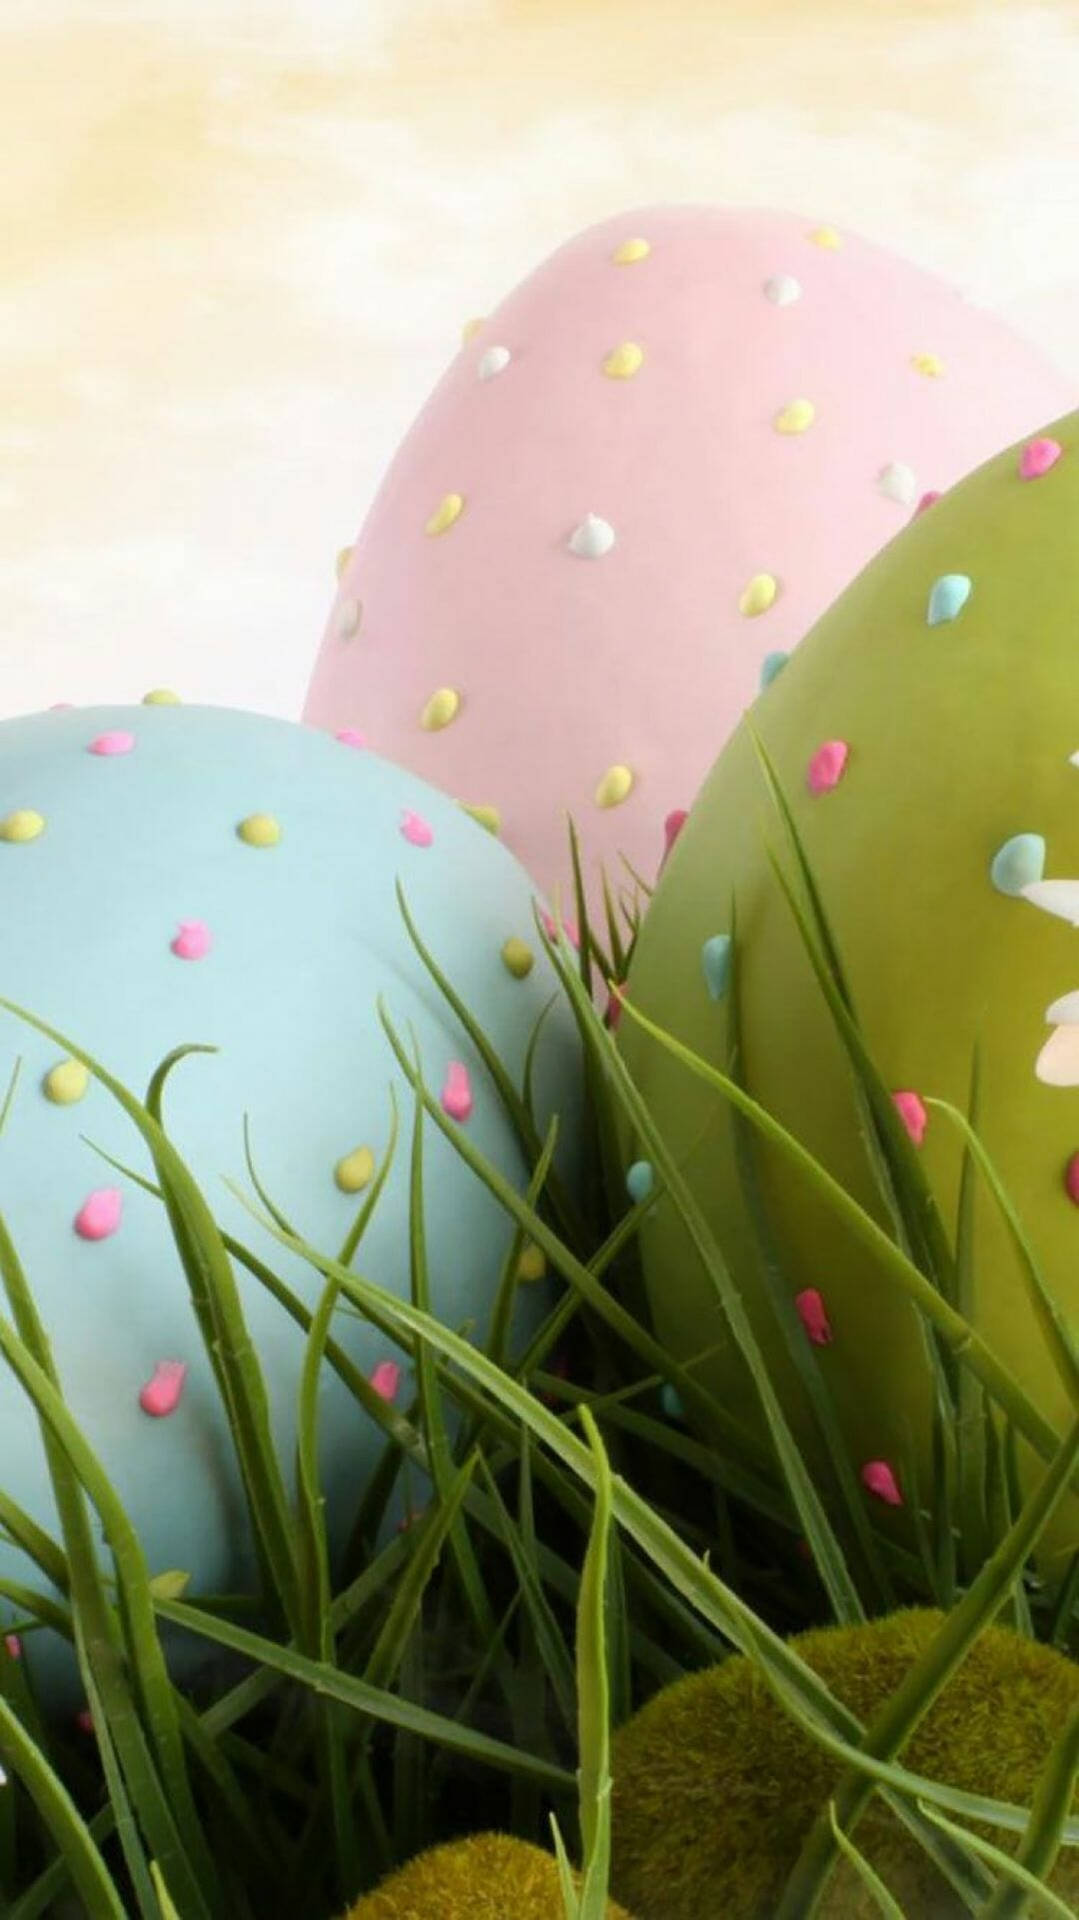 Fondosde Pantalla De Huevos De Pascua En Tonos Pastel Para Iphone. Fondo de pantalla